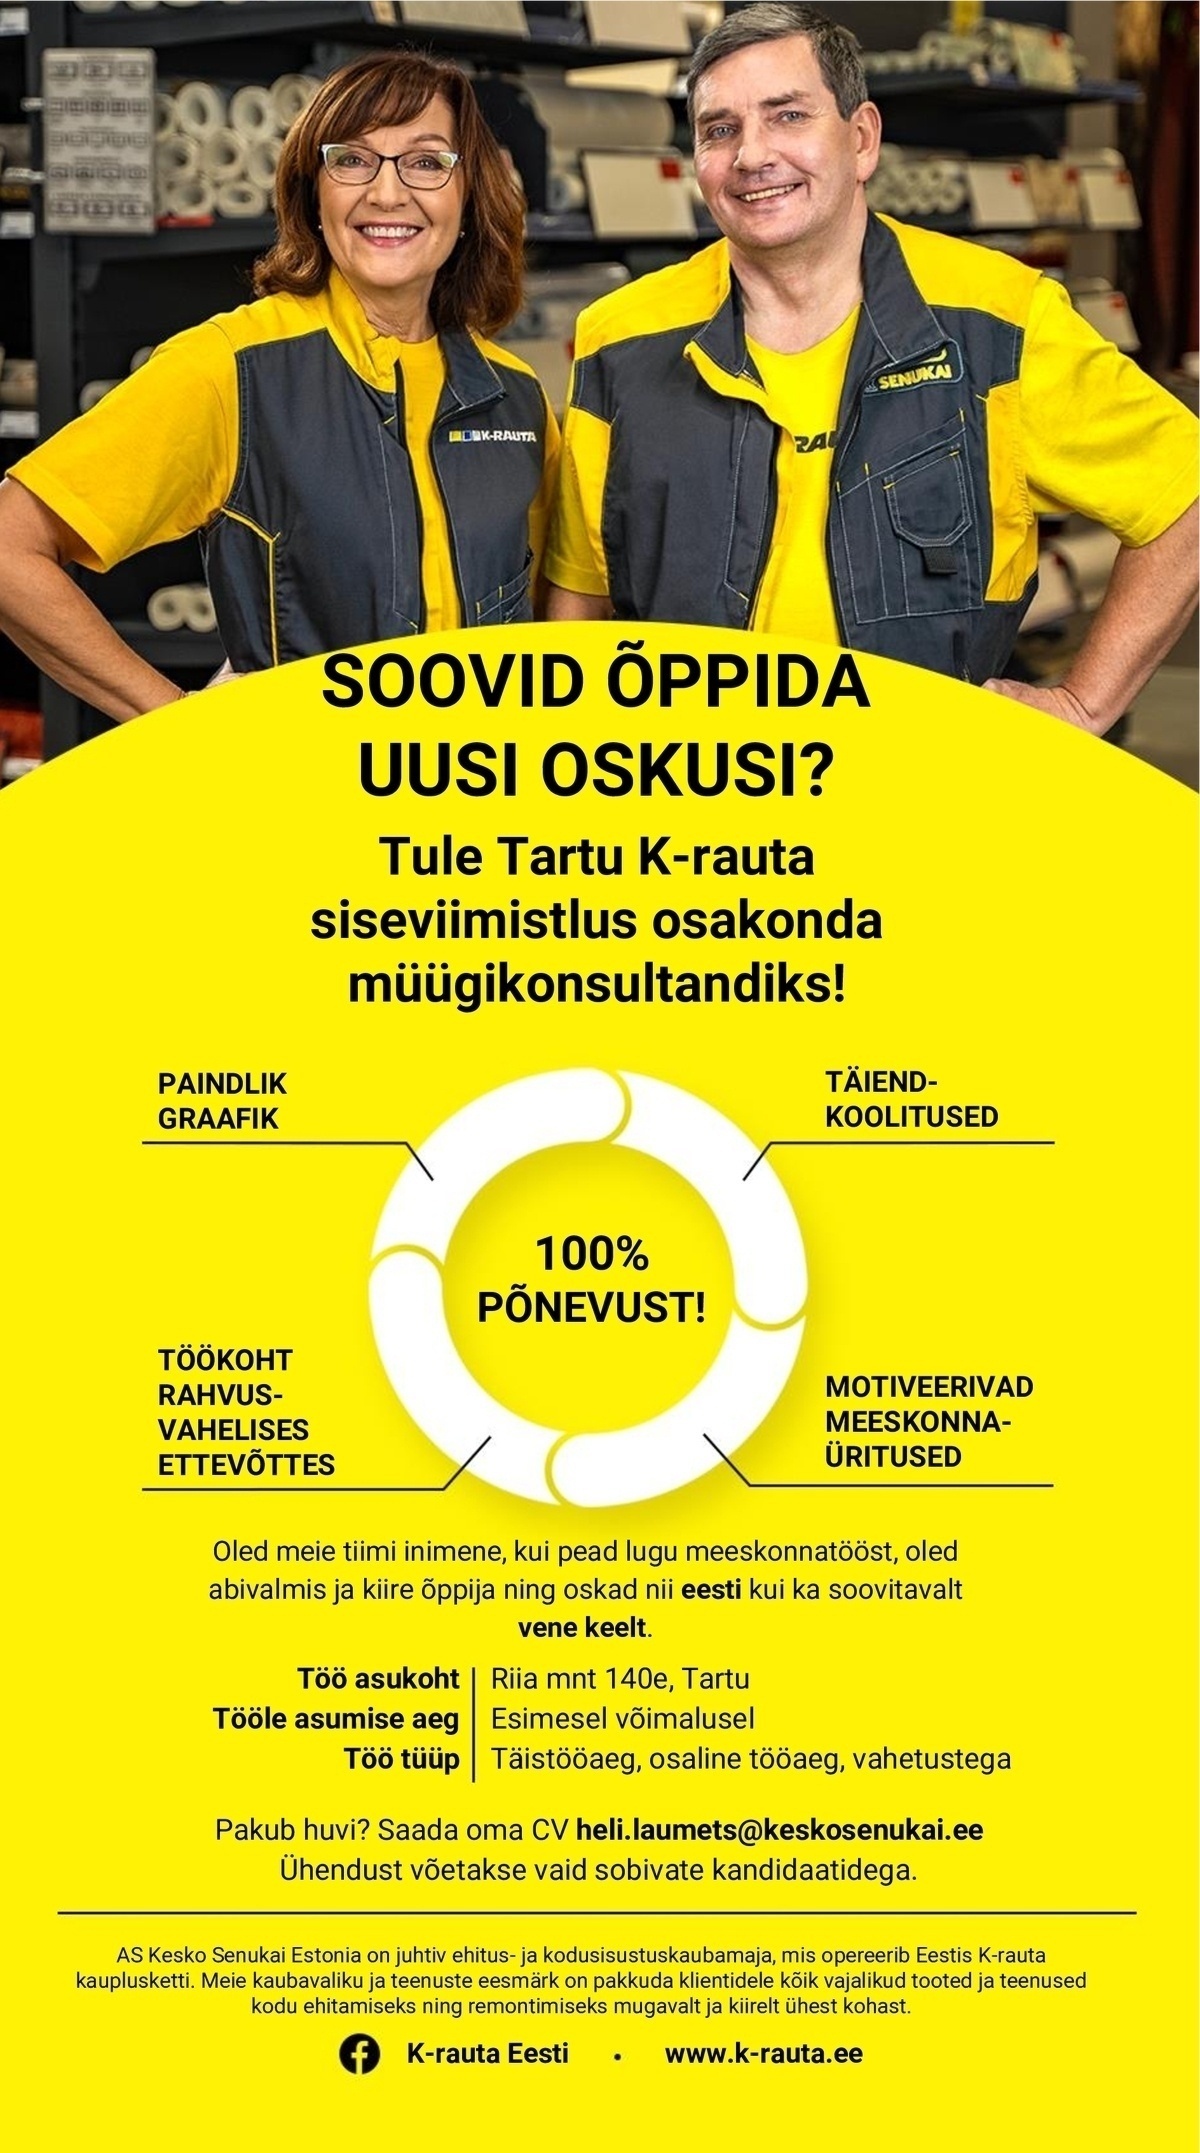 AS Kesko Senukai Estonia Siseviimistlus müügikonsultant Tartu K-rauta kauplusesse